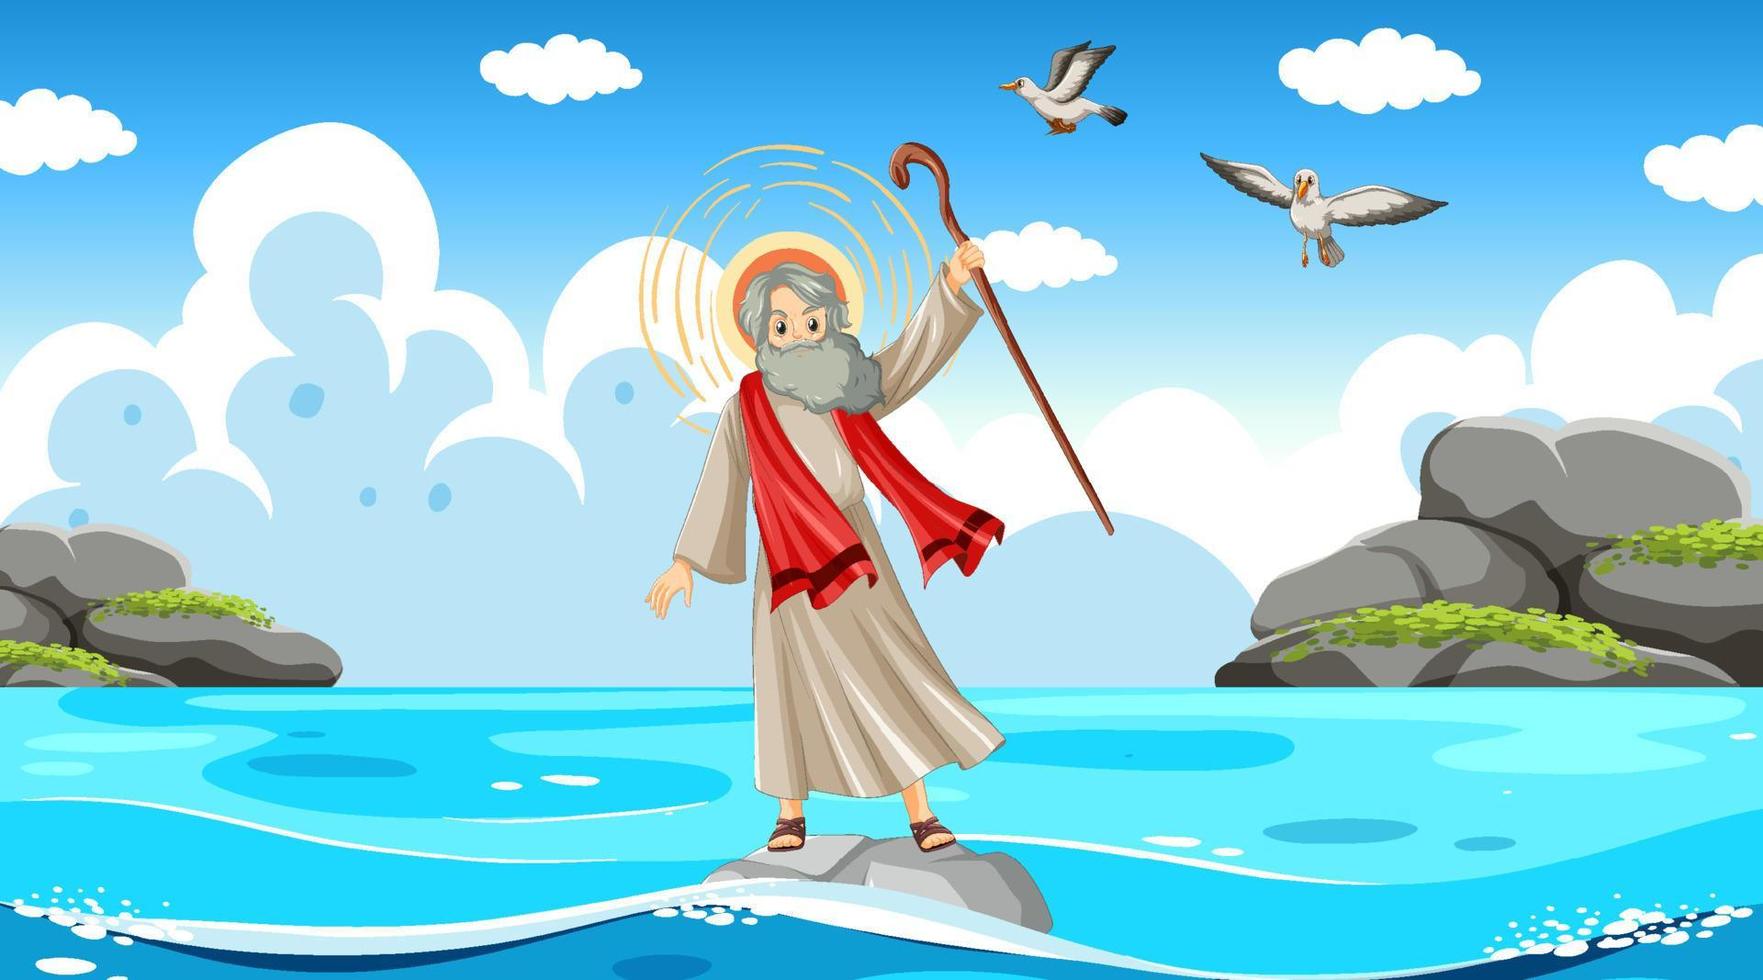 Moses Zeichentrickfigur mit Meereshintergrund vektor